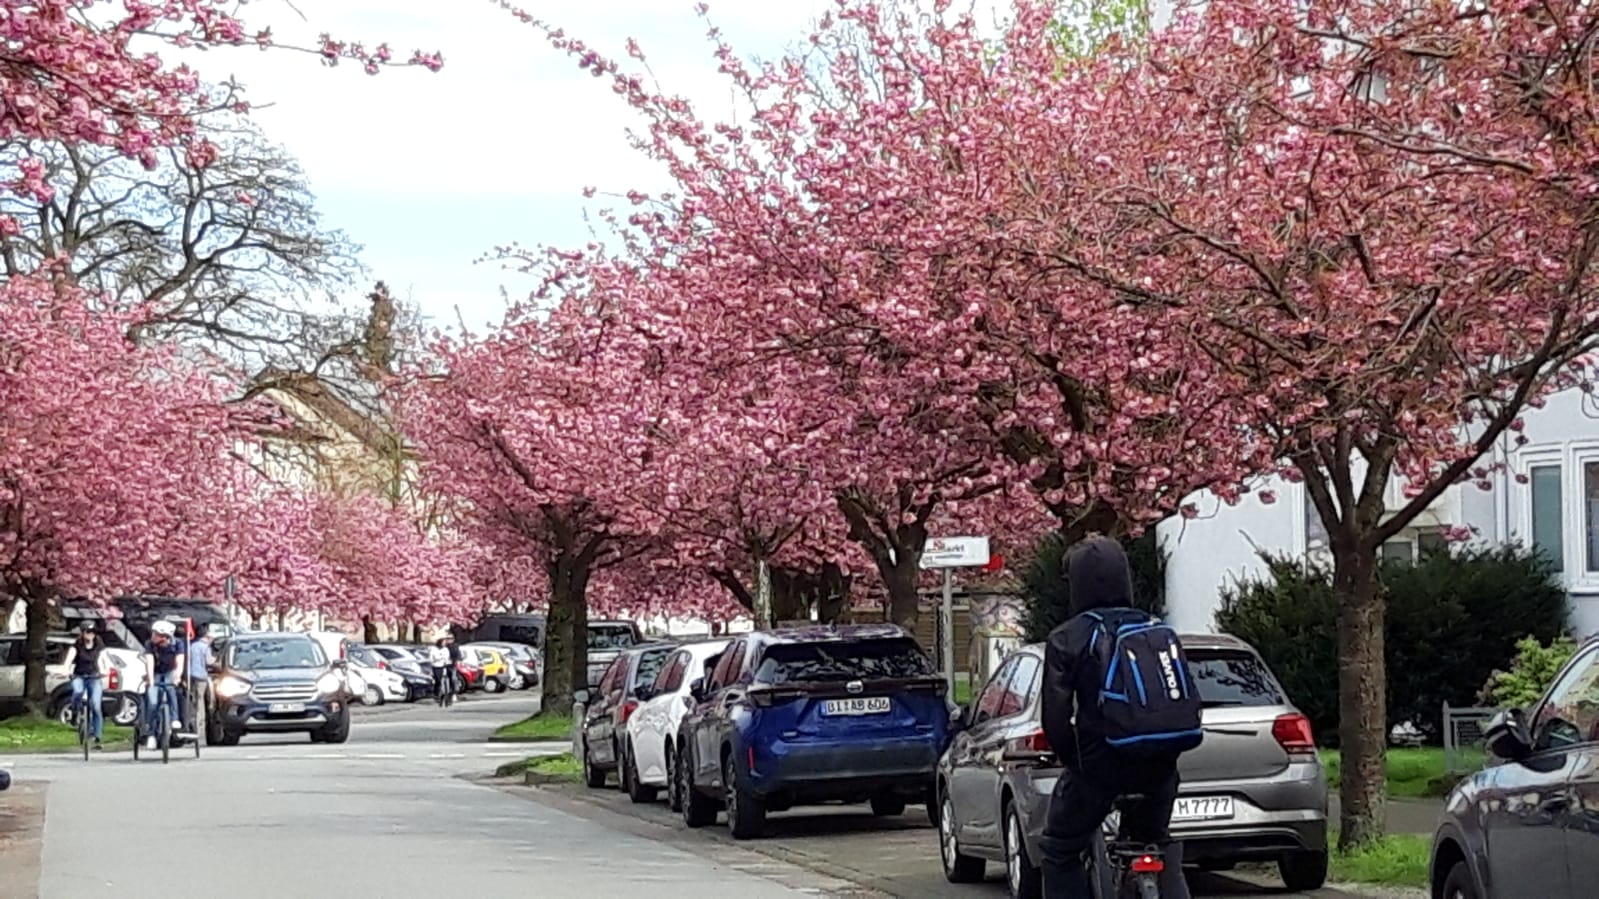 Radtour zur Kirschblüte in Bielefeld